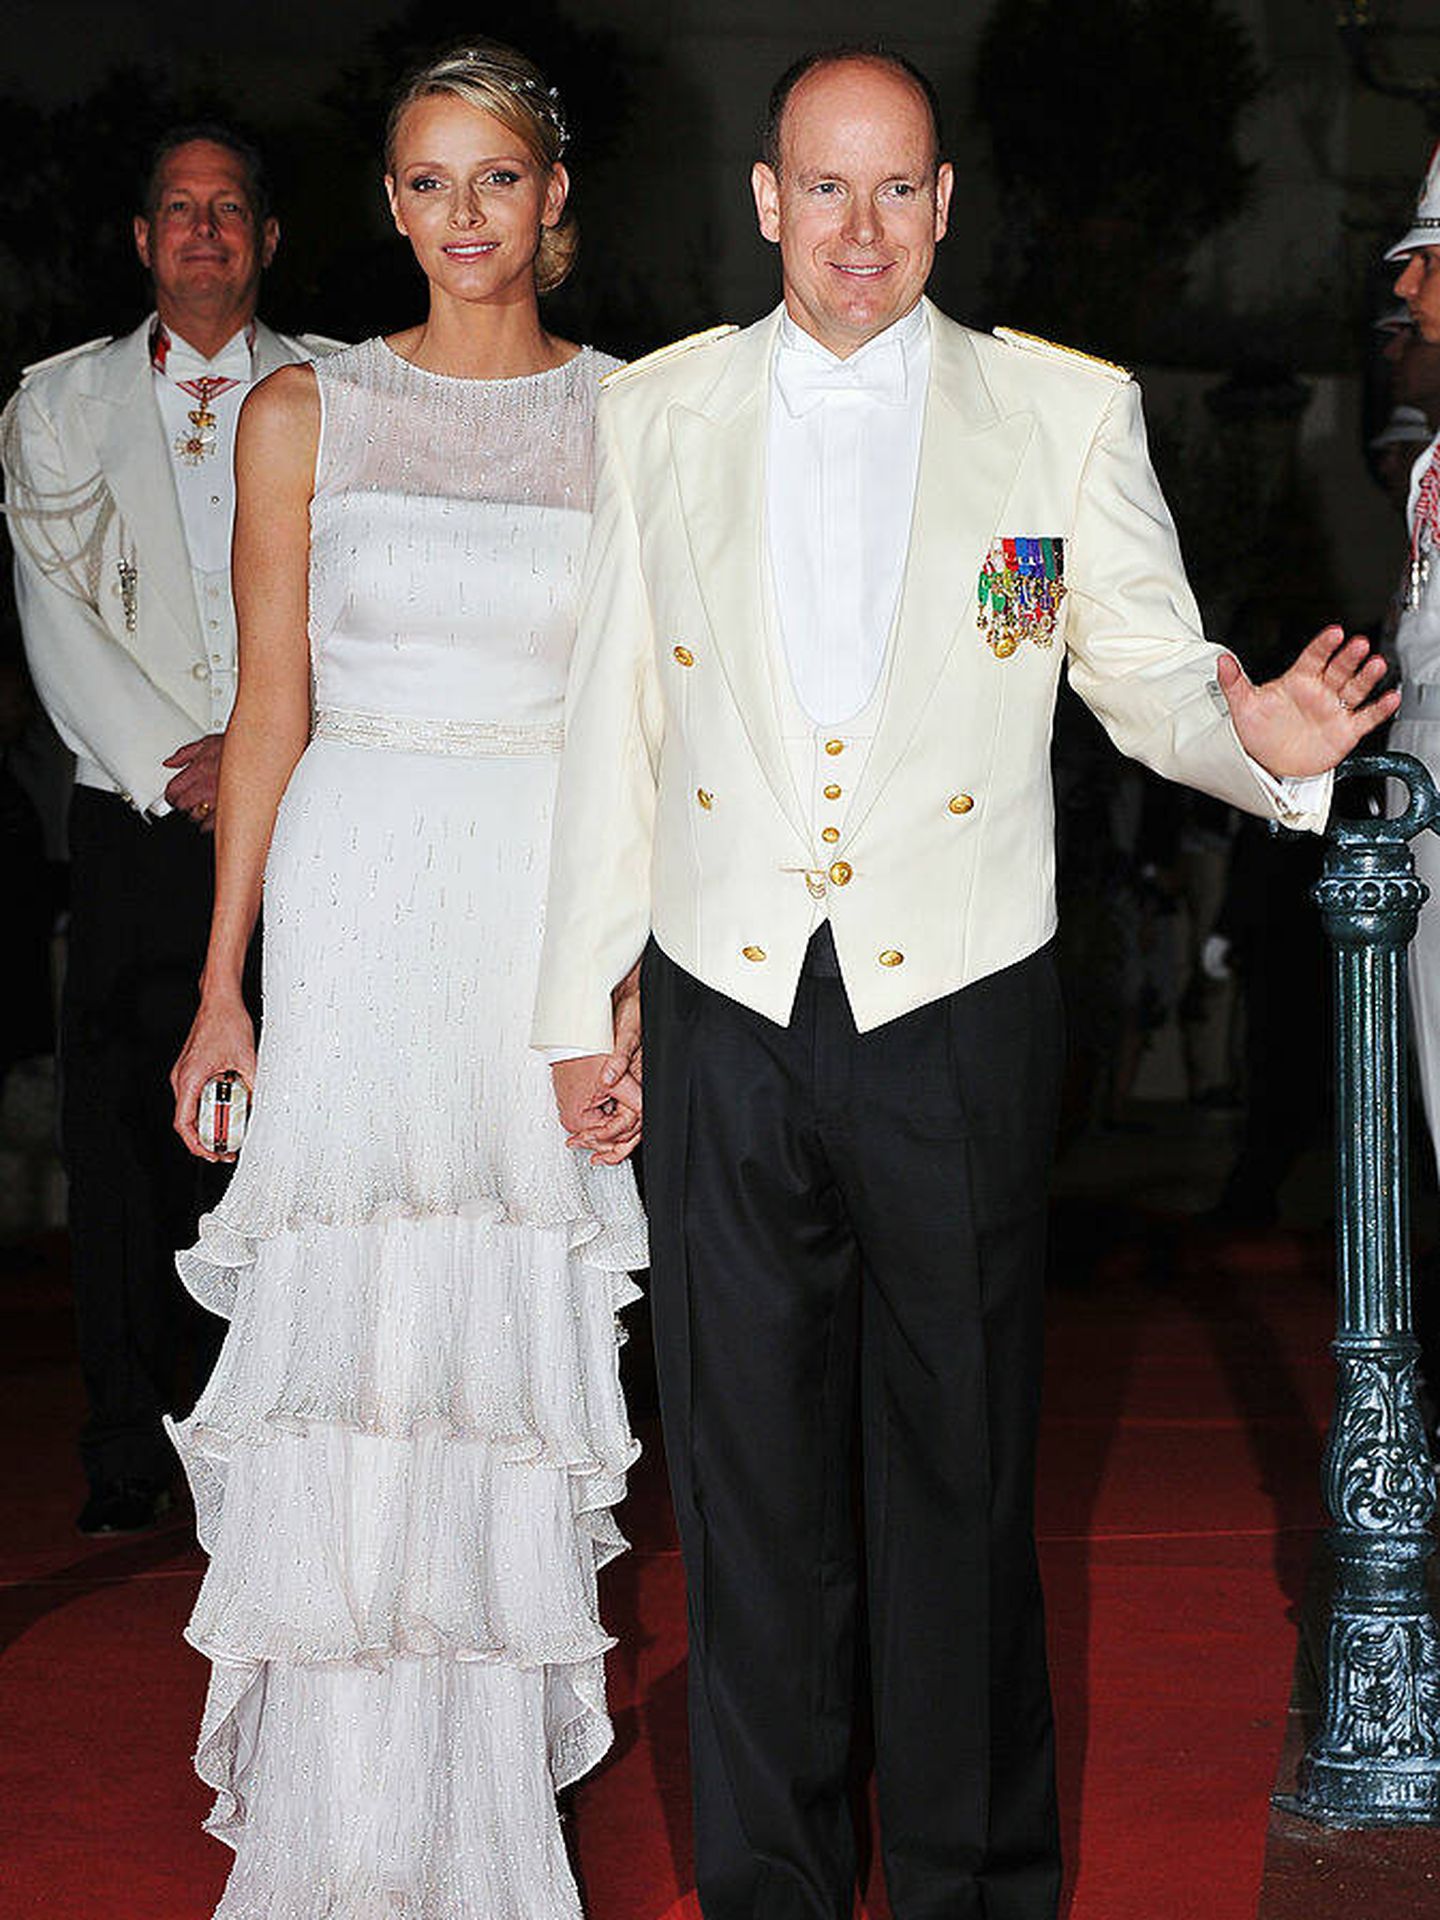 El vestido nocturno escogido por Charlène de Mónaco para su boda. (Getty Images)